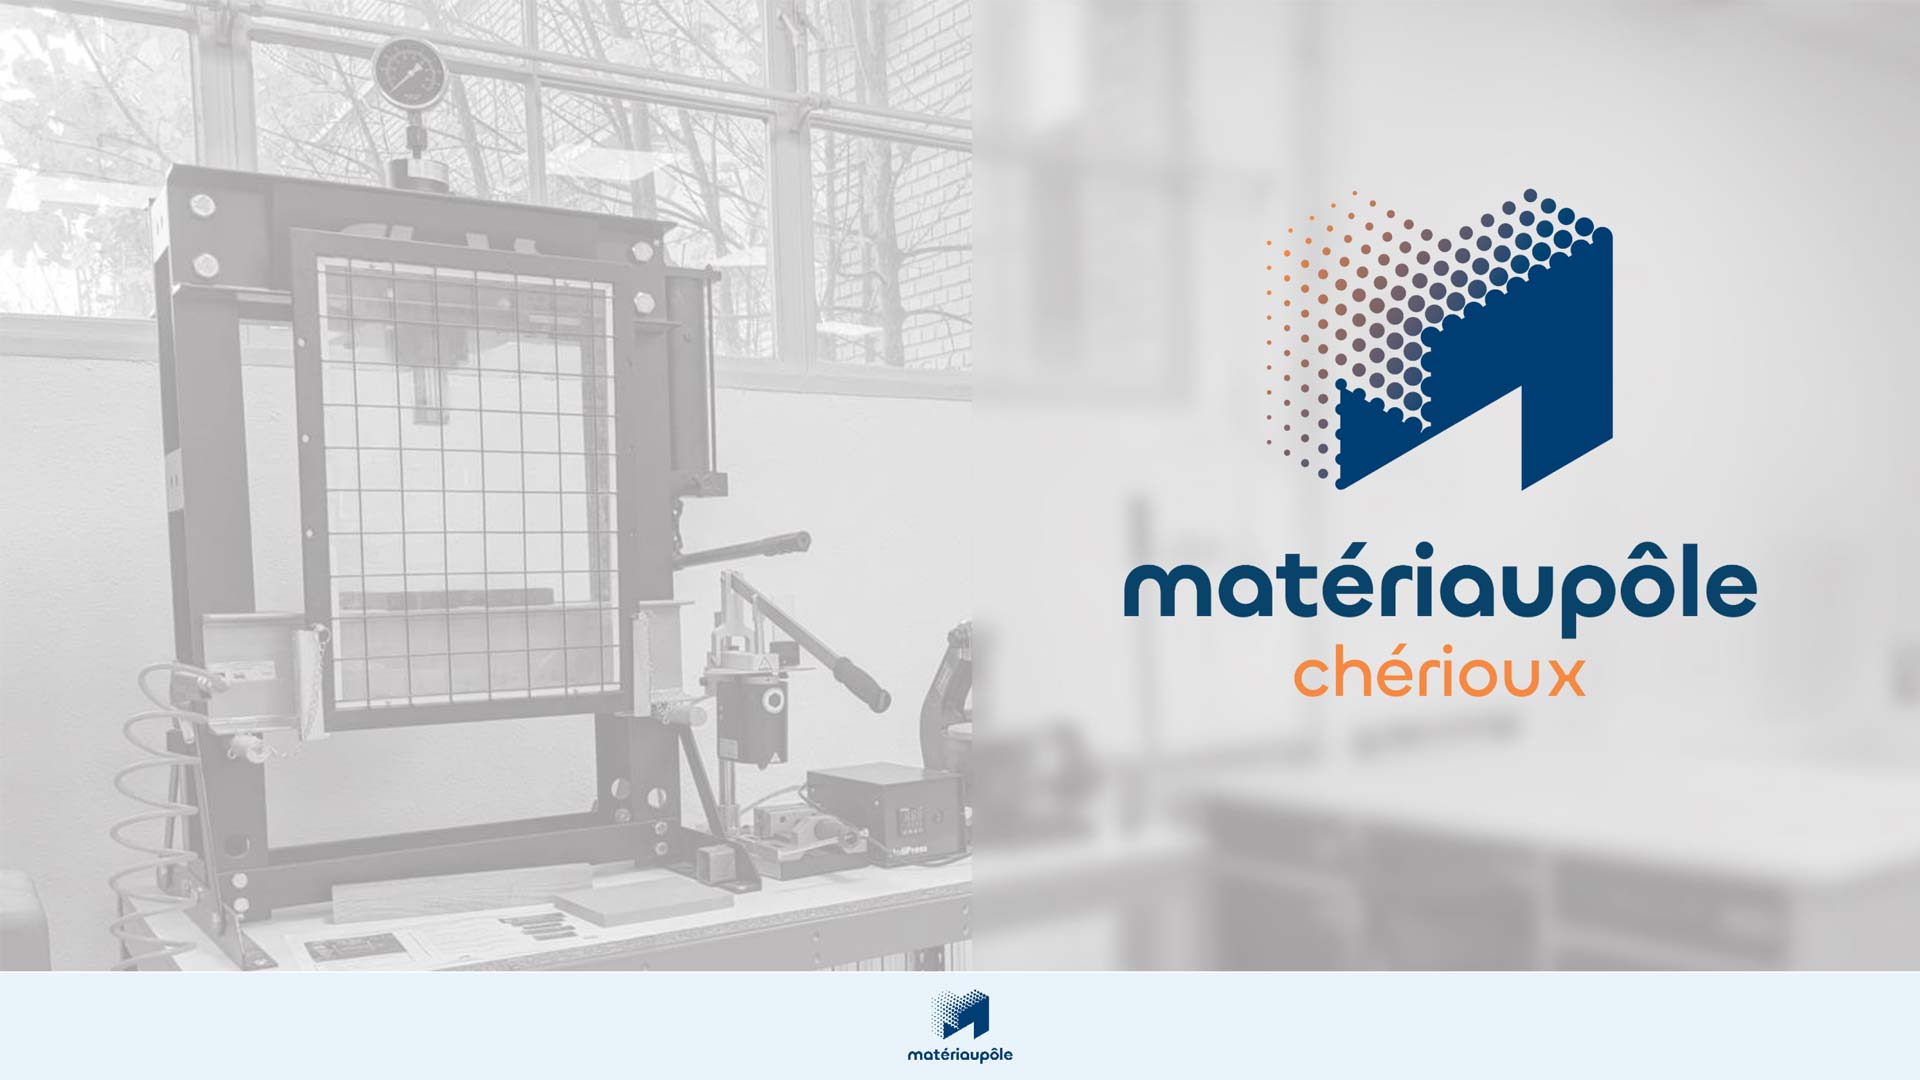 Matériaupôle Chérioux: Förderung der Innovation von Werkstoffen